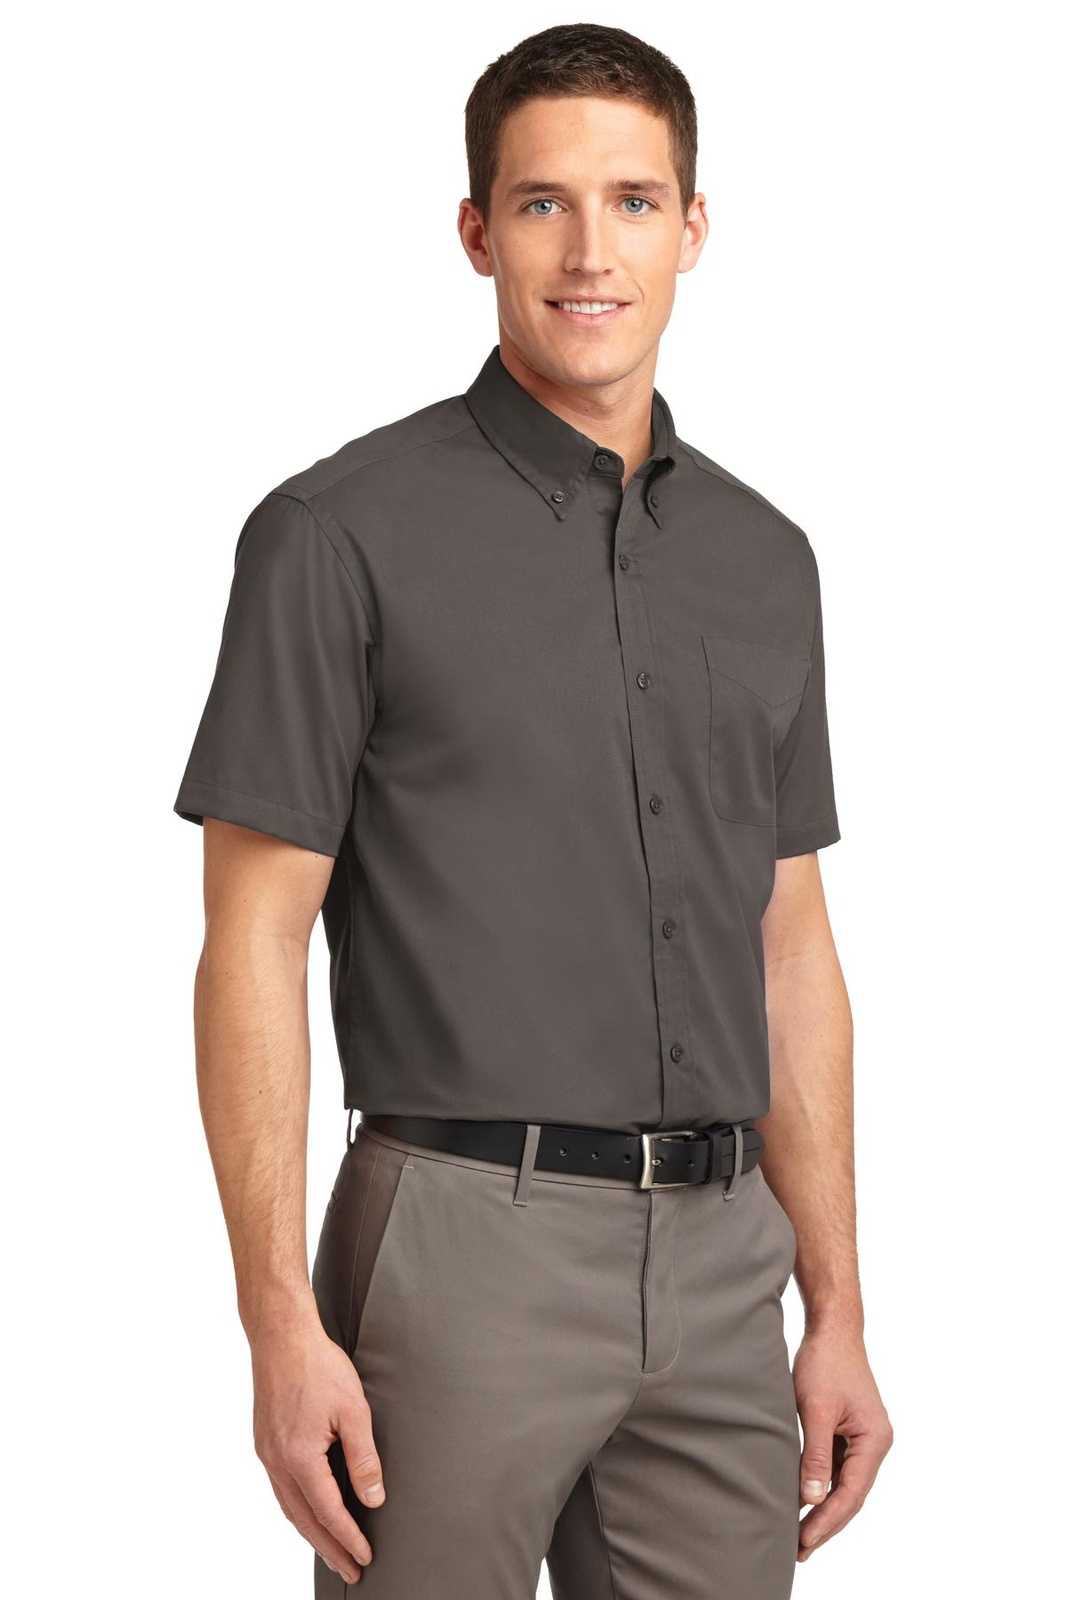 Port Authority S508 Short Sleeve Easy Care Shirt - Bark - HIT a Double - 4